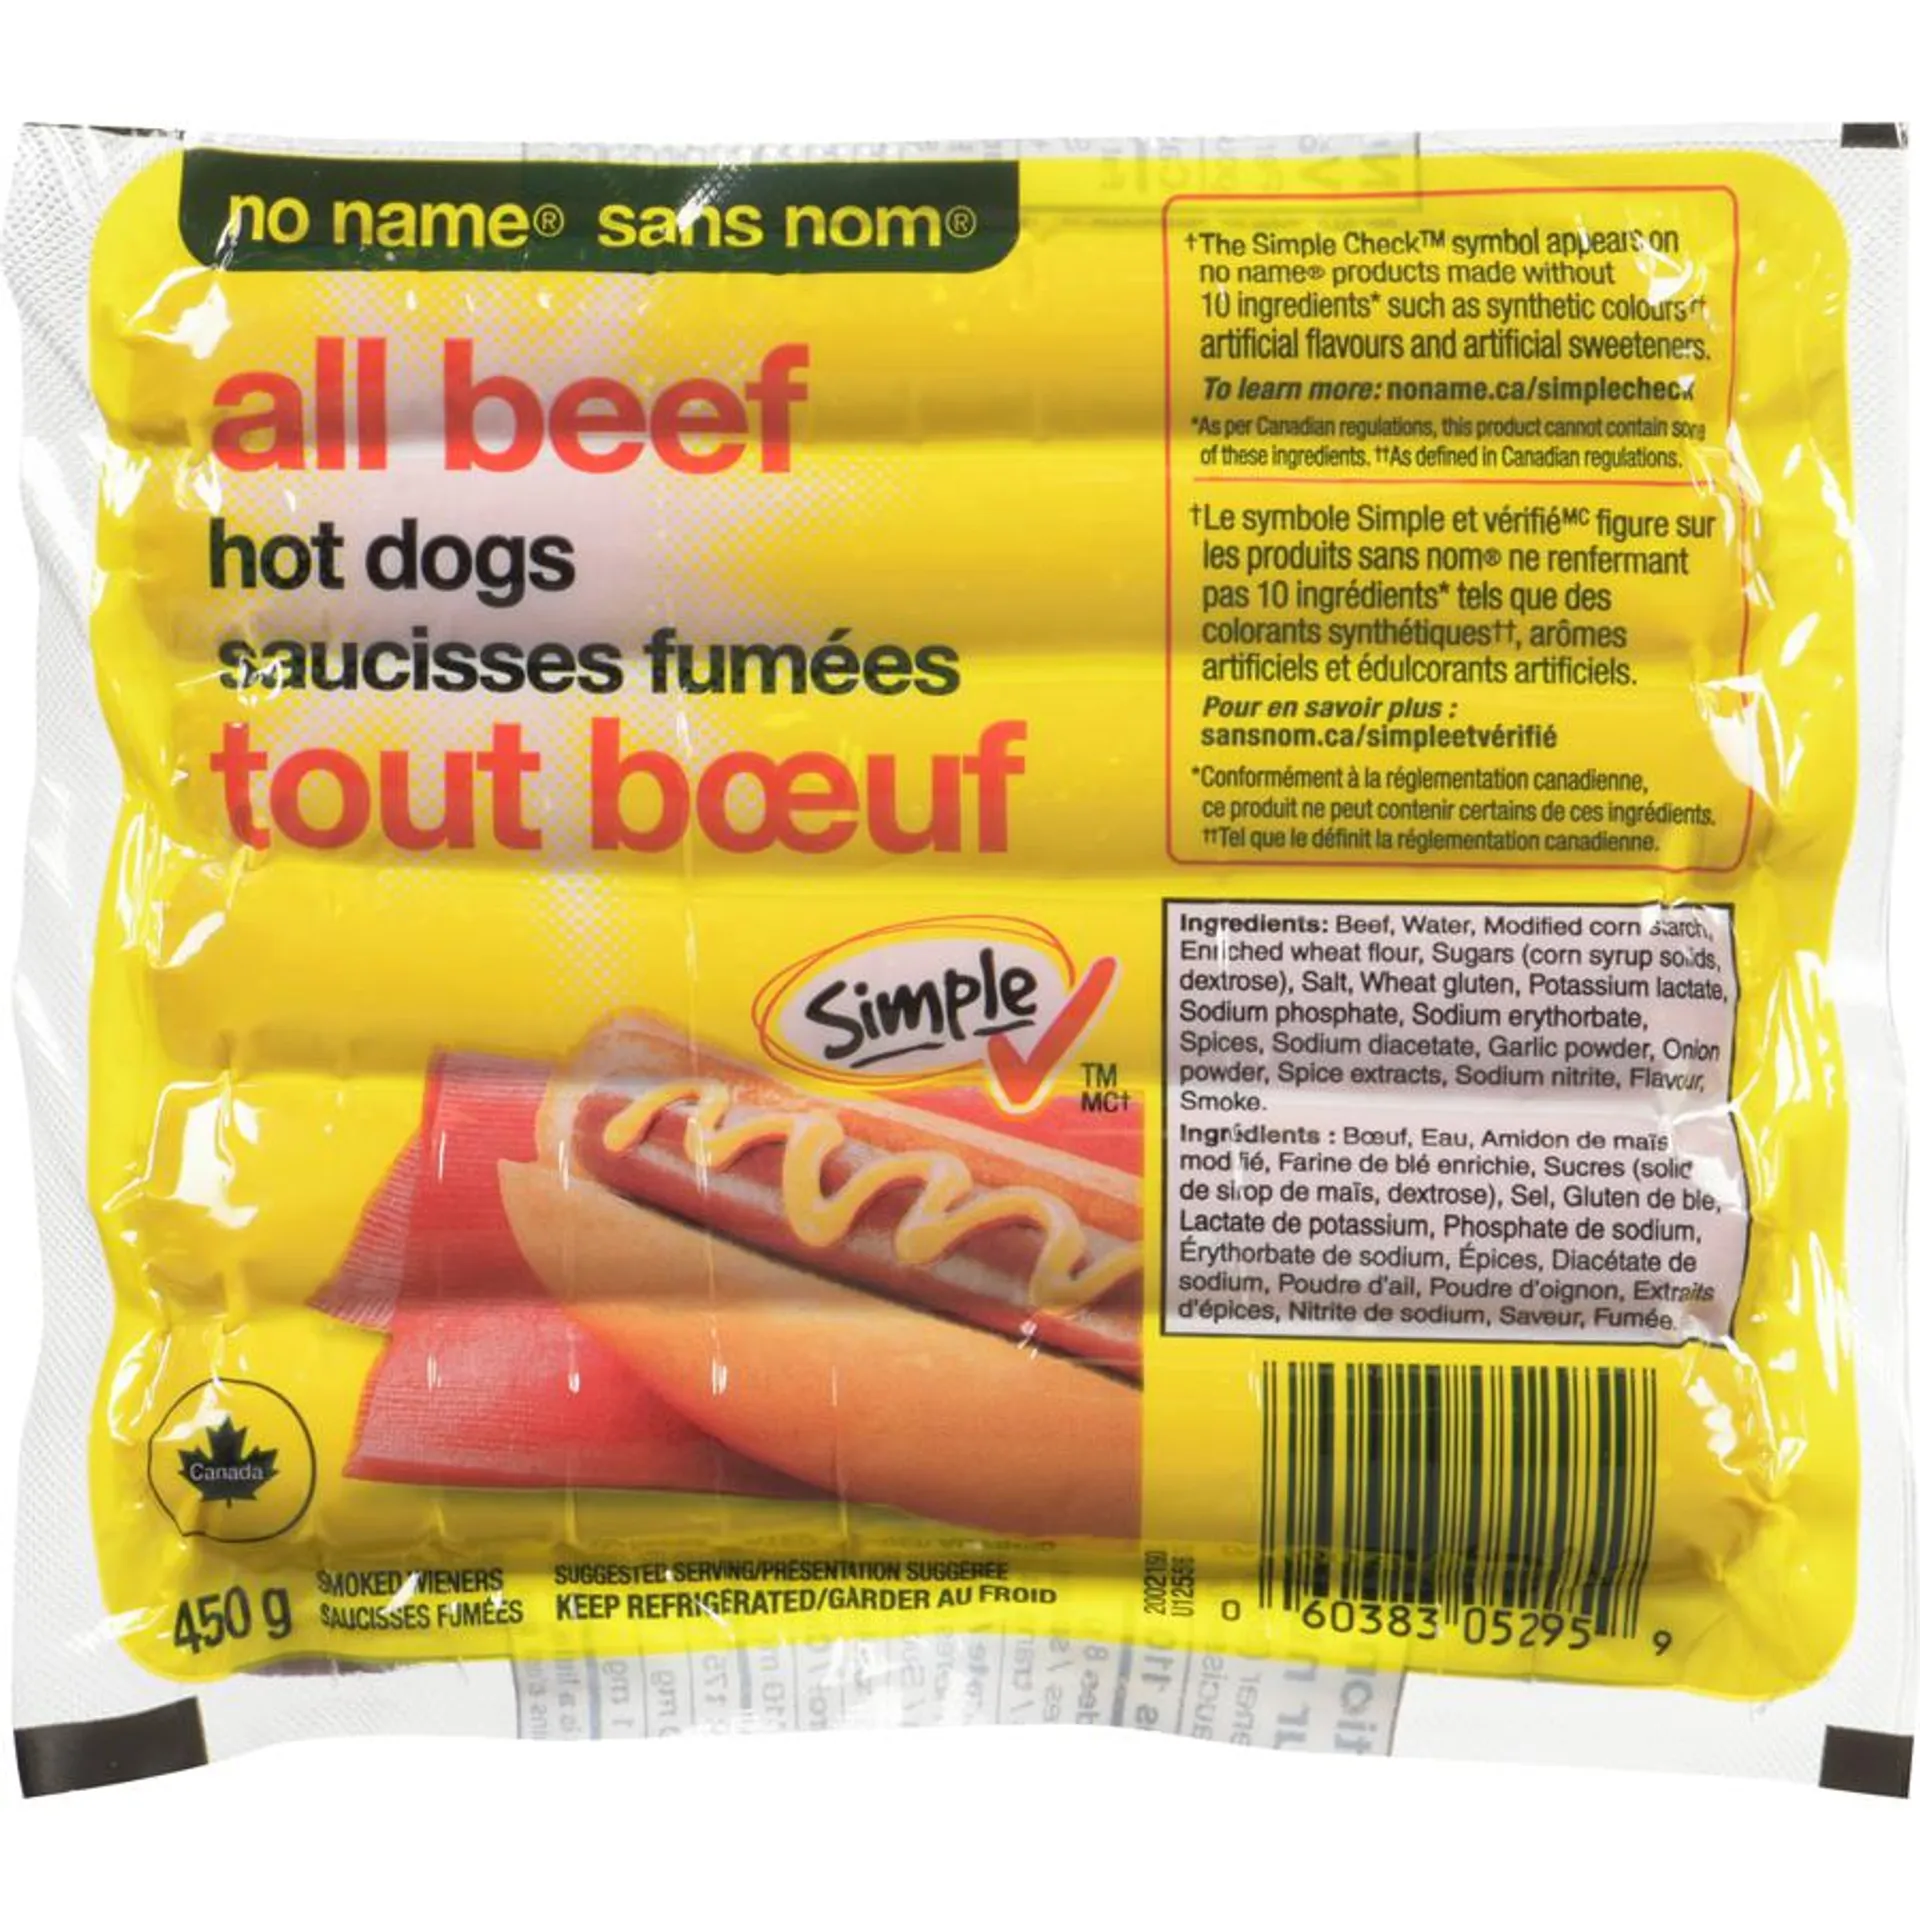 All-Beef Wieners